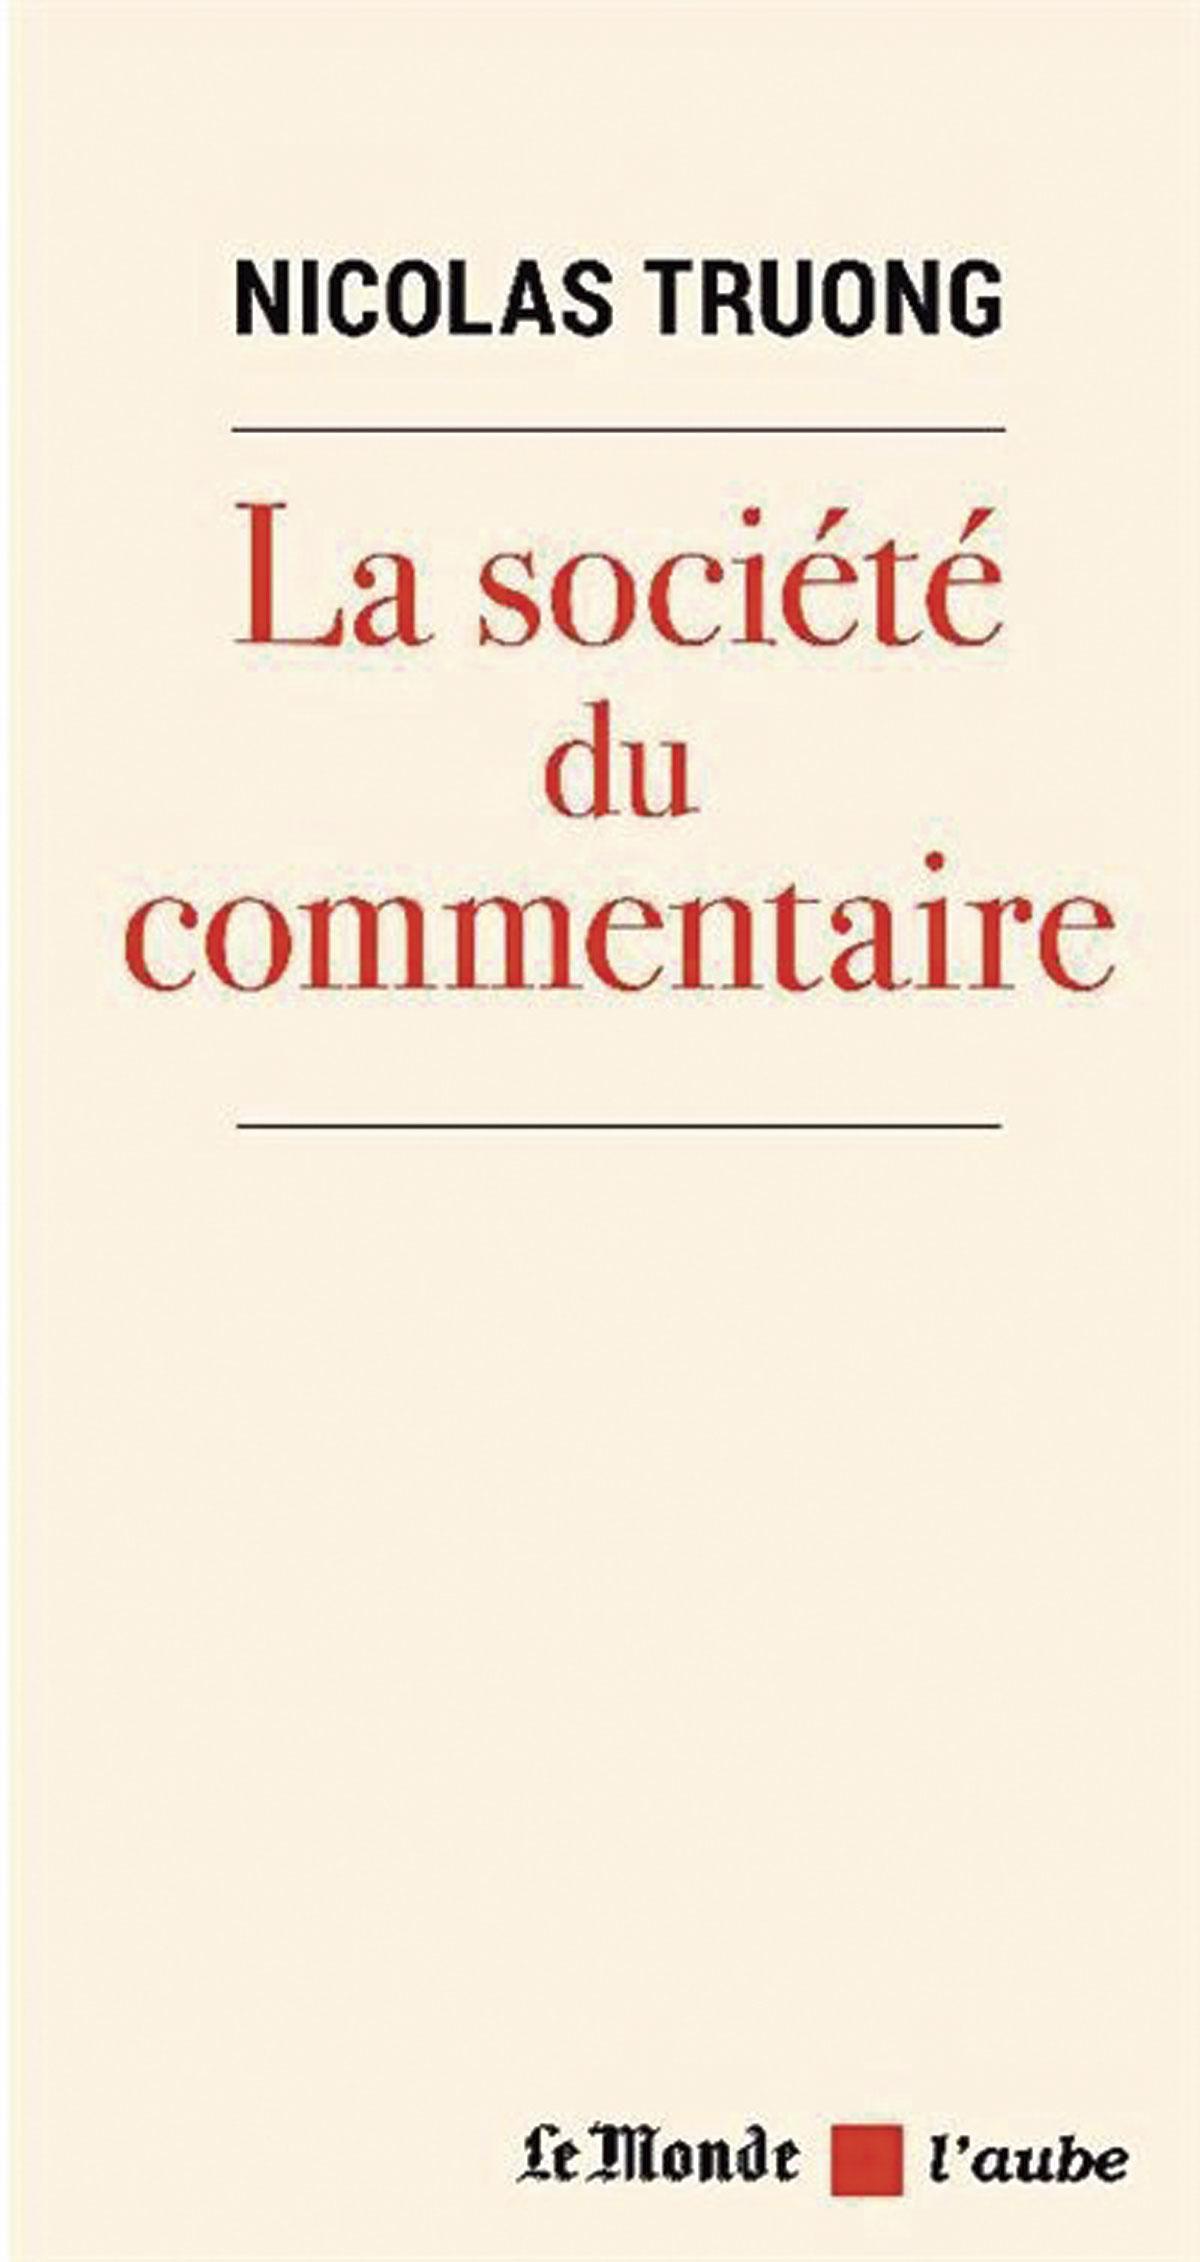 (1) La Société du commentaire, par Nicolas Truong, L’Aube/Le Monde, 108 p.